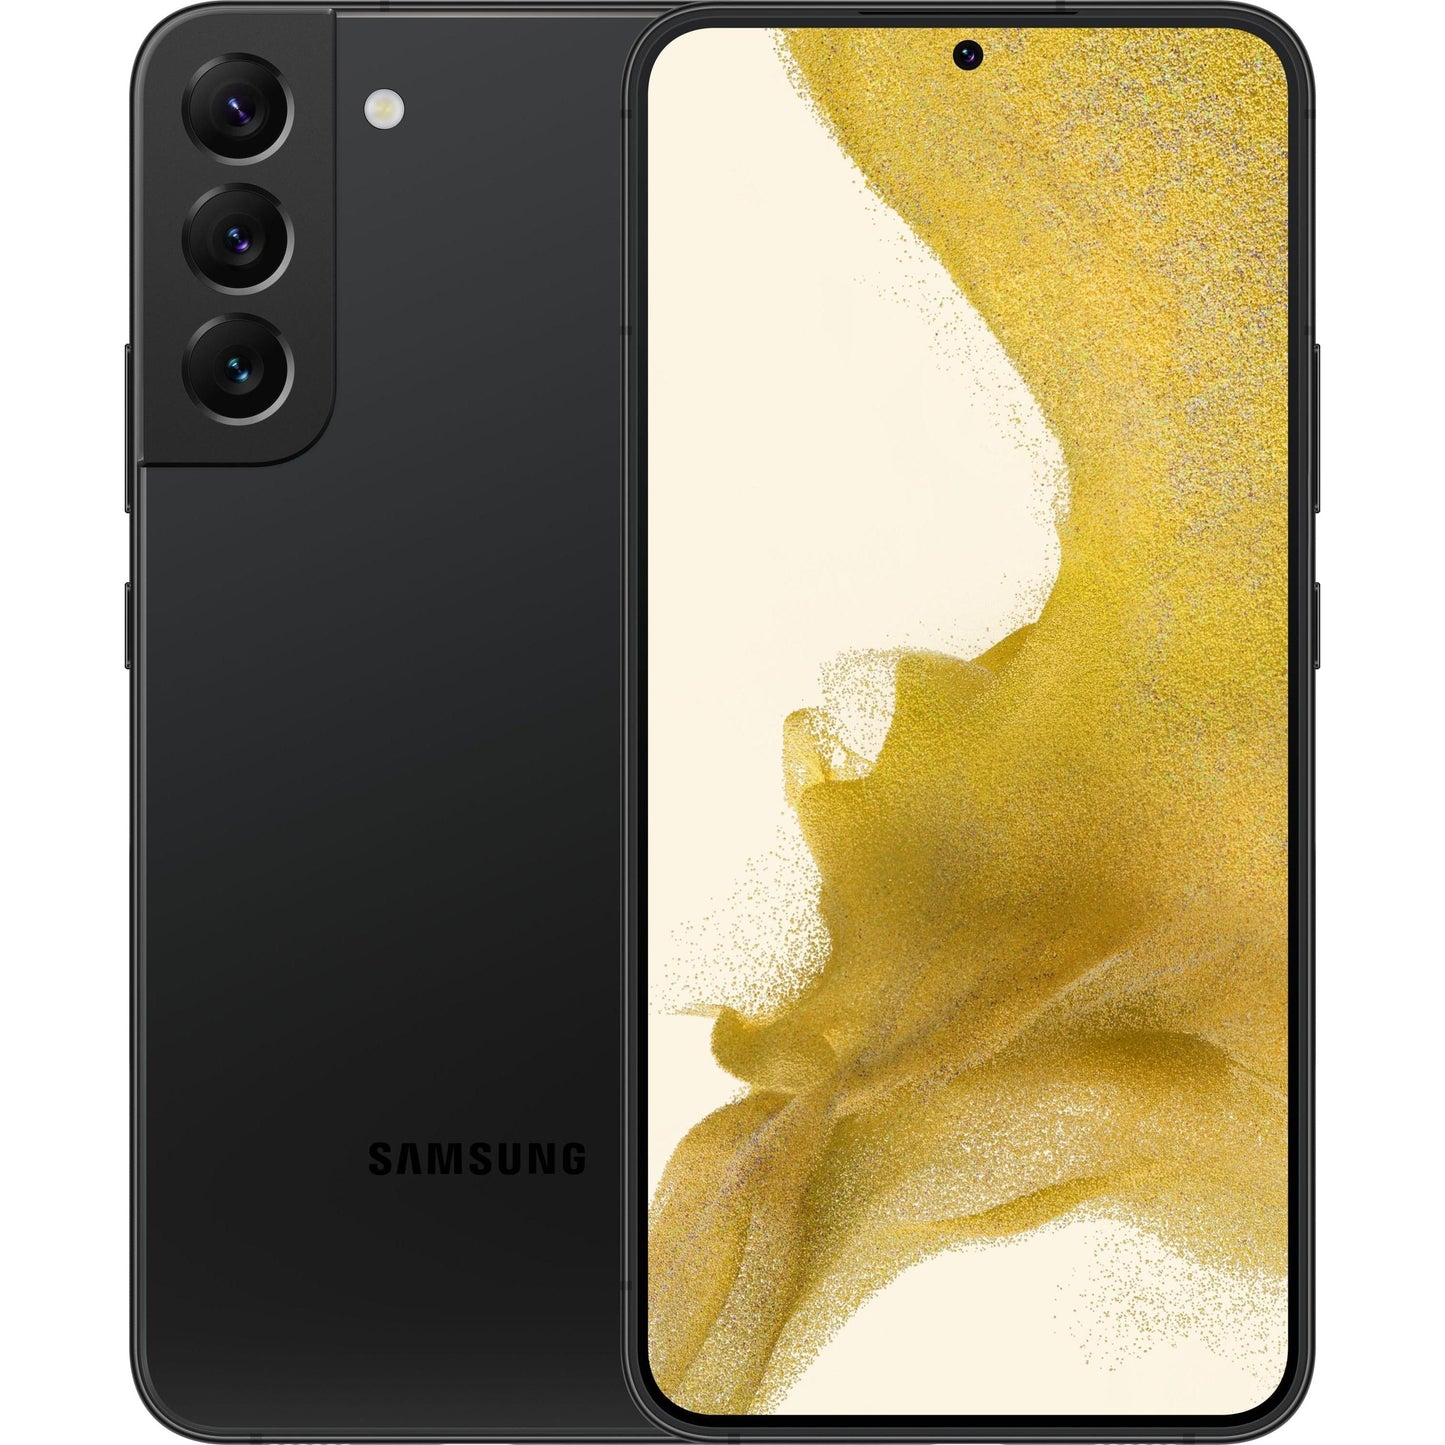 Samsung Galaxy S22 - 128GB - Phantom Black - US mobile